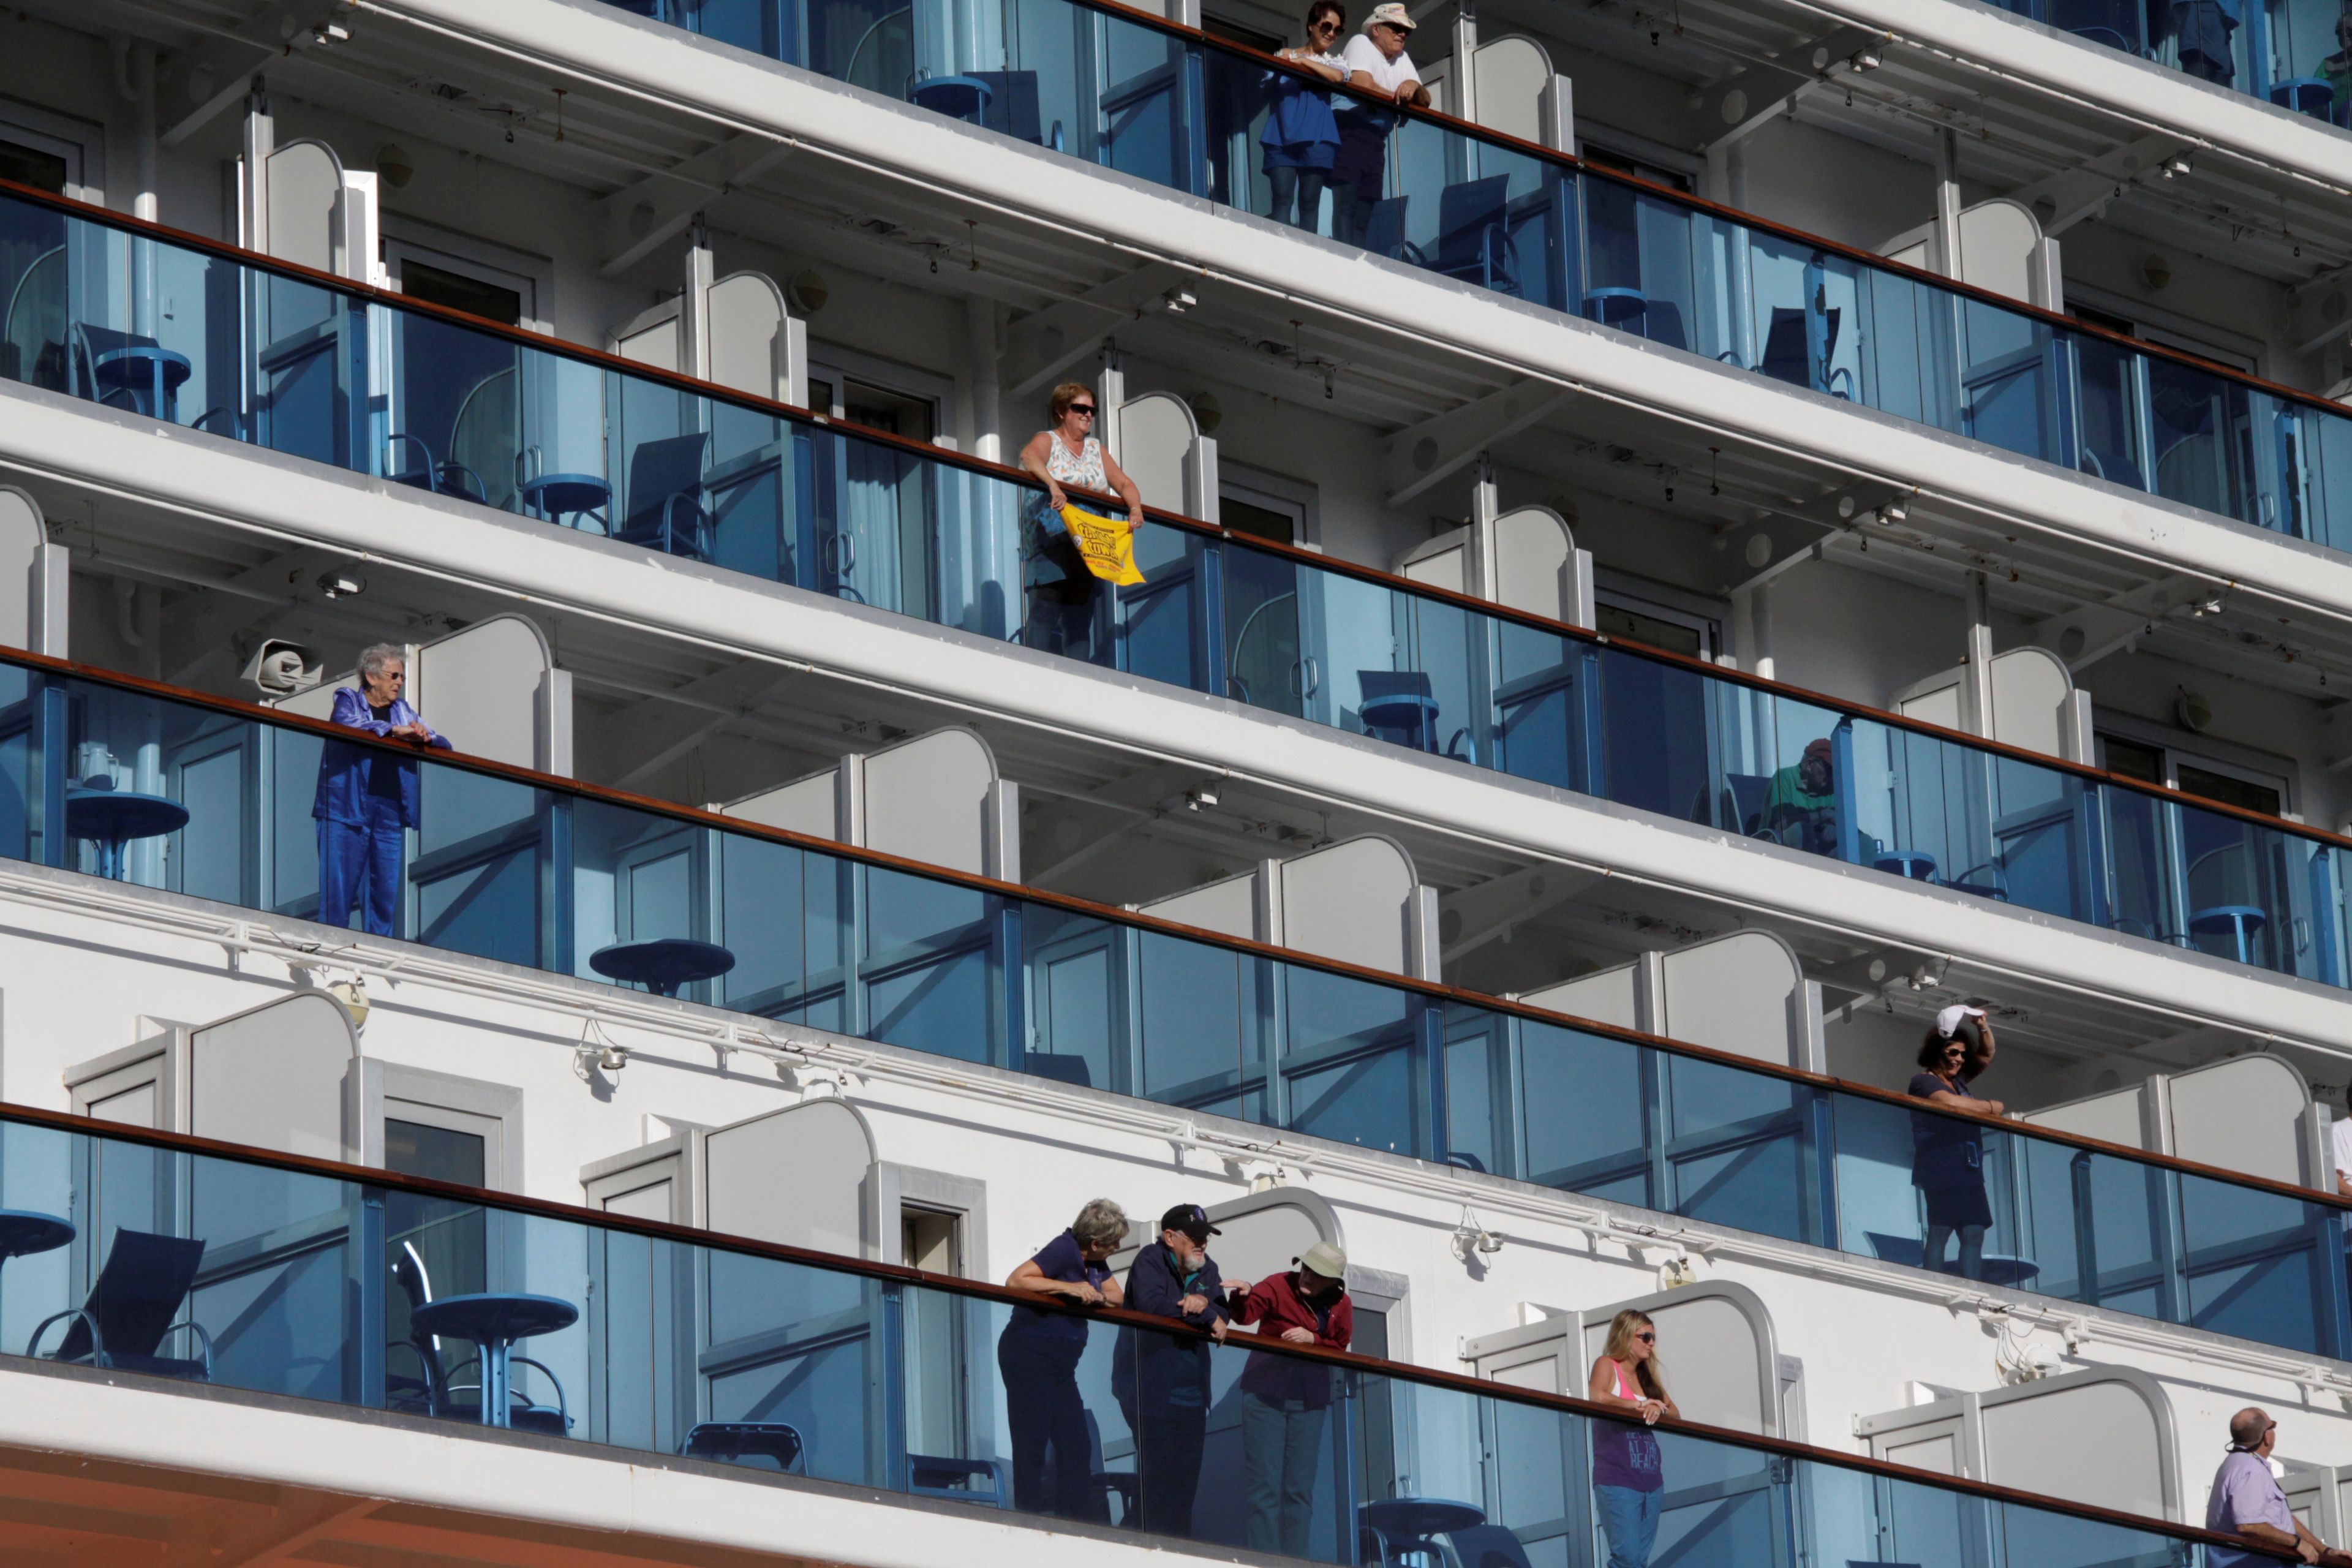 Pasajeros en los balcones de los camarotes de un crucero.